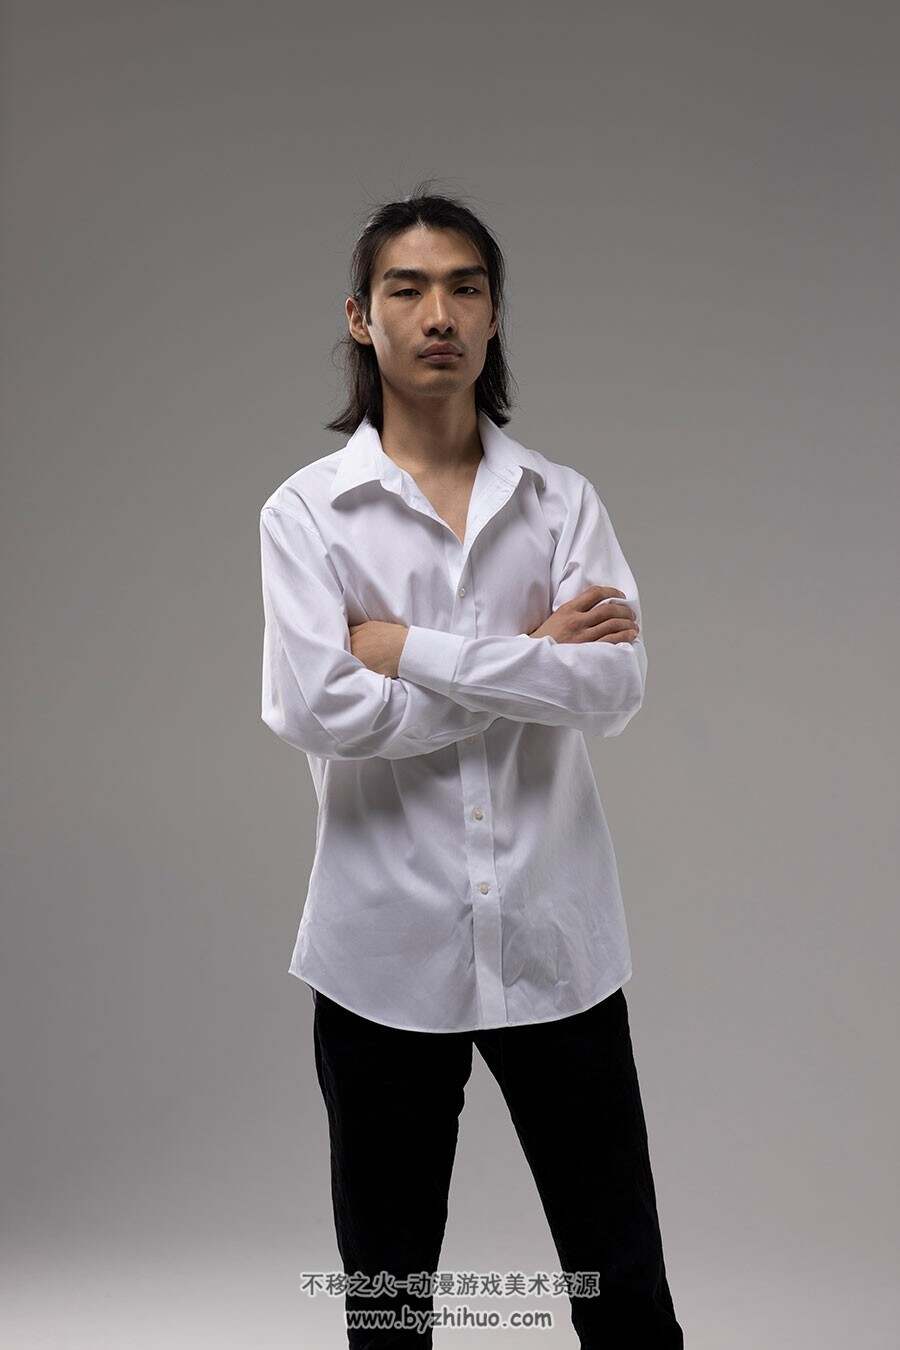 亚洲男性衬衫艺用写真 美术姿势参考图片 百度网盘下载 296P